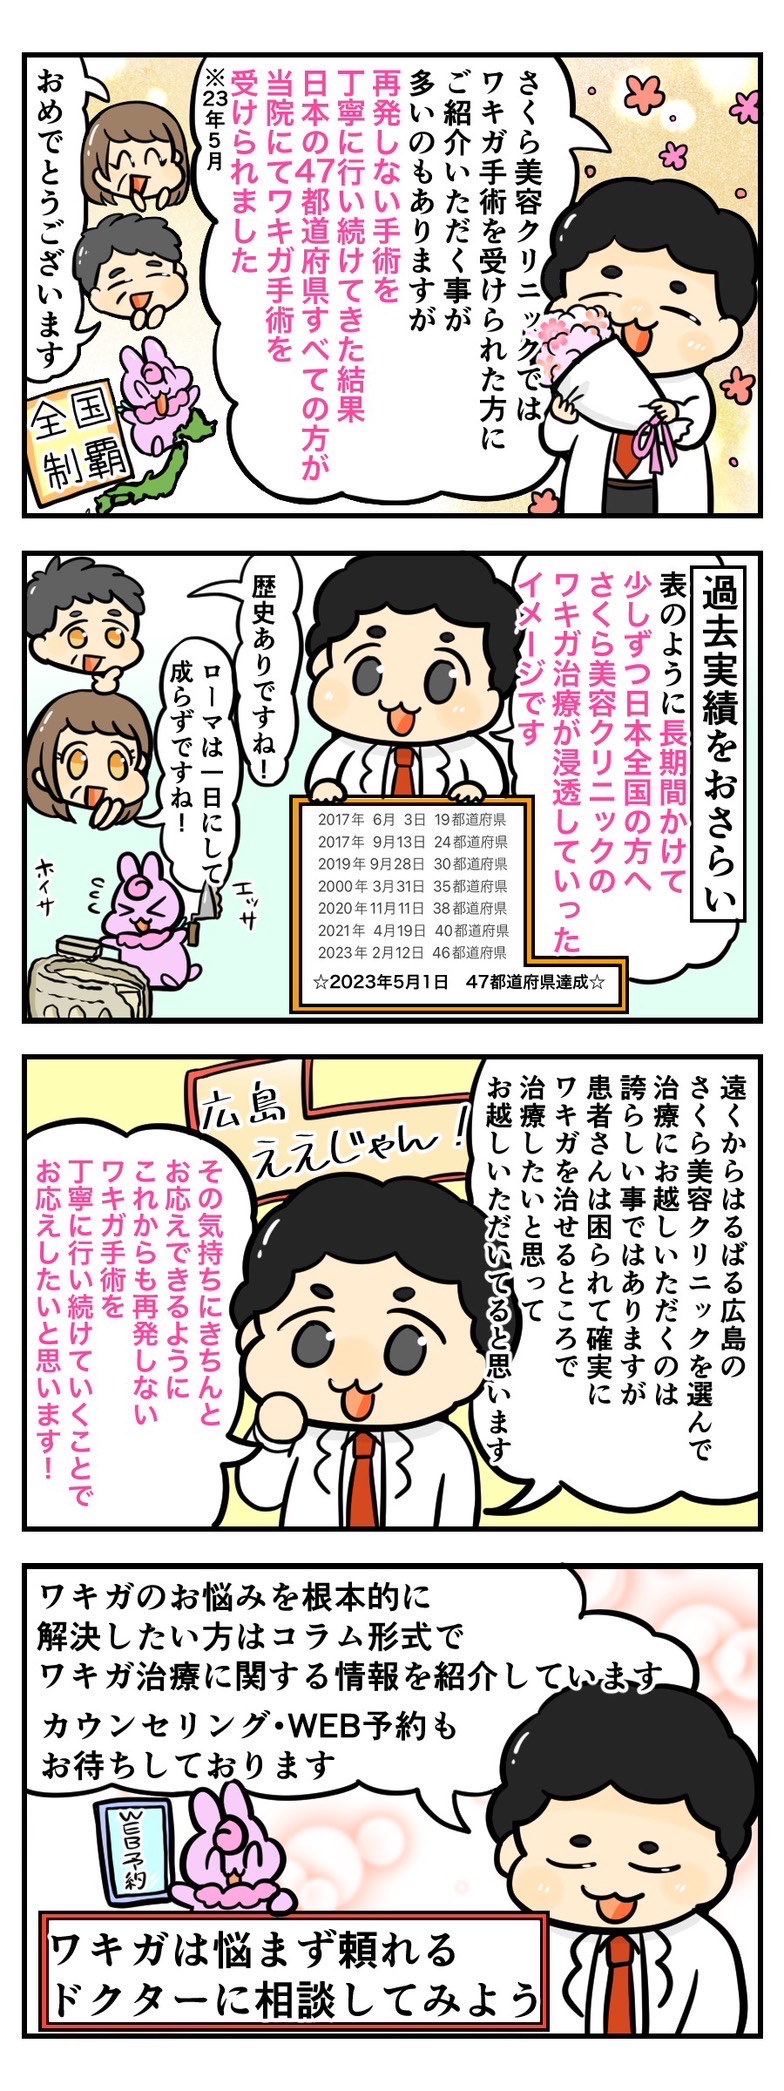 ついに日本全国47都道府県の方がワキガ治療を受けられました